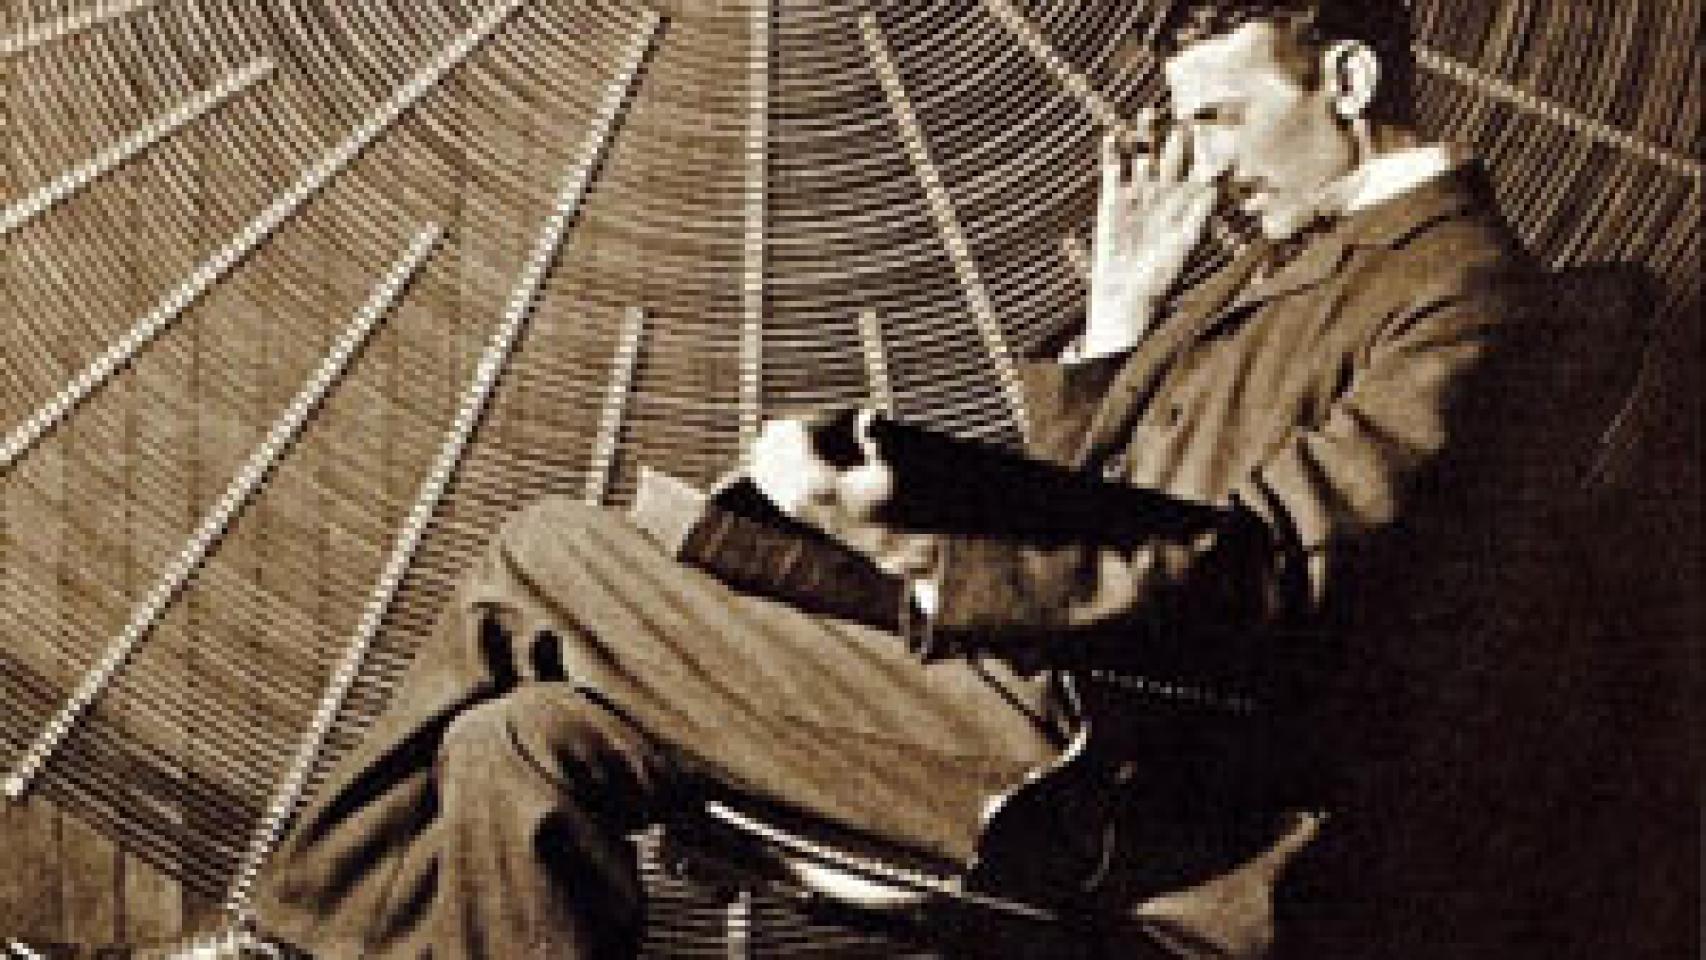 Image: Firmado: Nikola Tesla